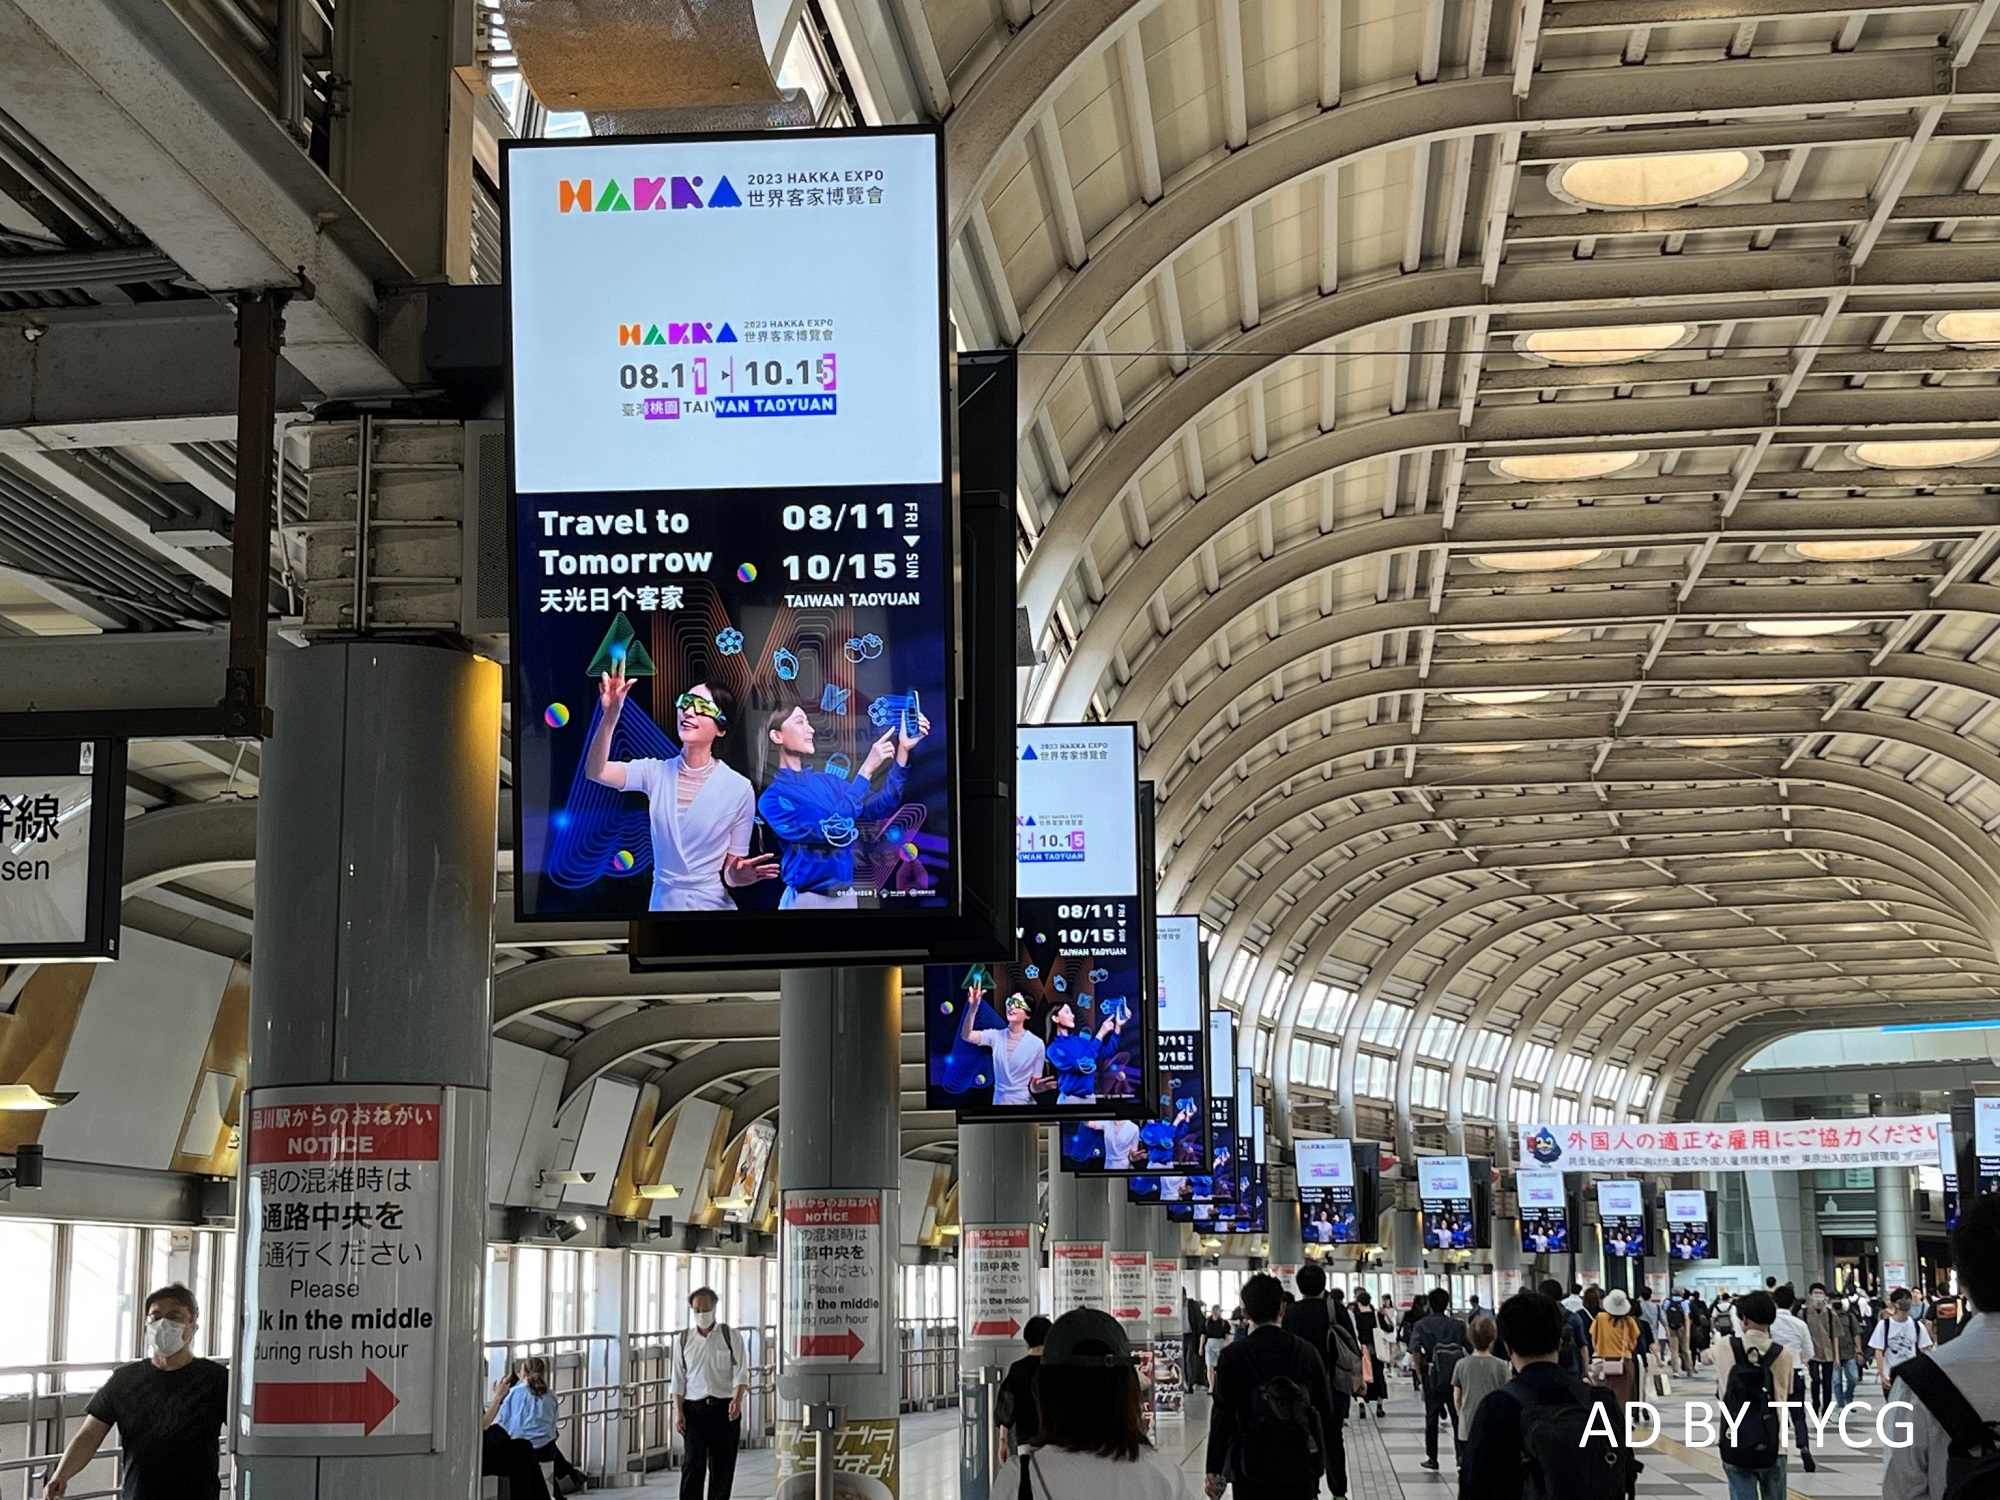 2023 Hakka Expo’s ad at Tokyo’s Shinagawa Station invites tourists to visit Taoyuan, Taiwan.